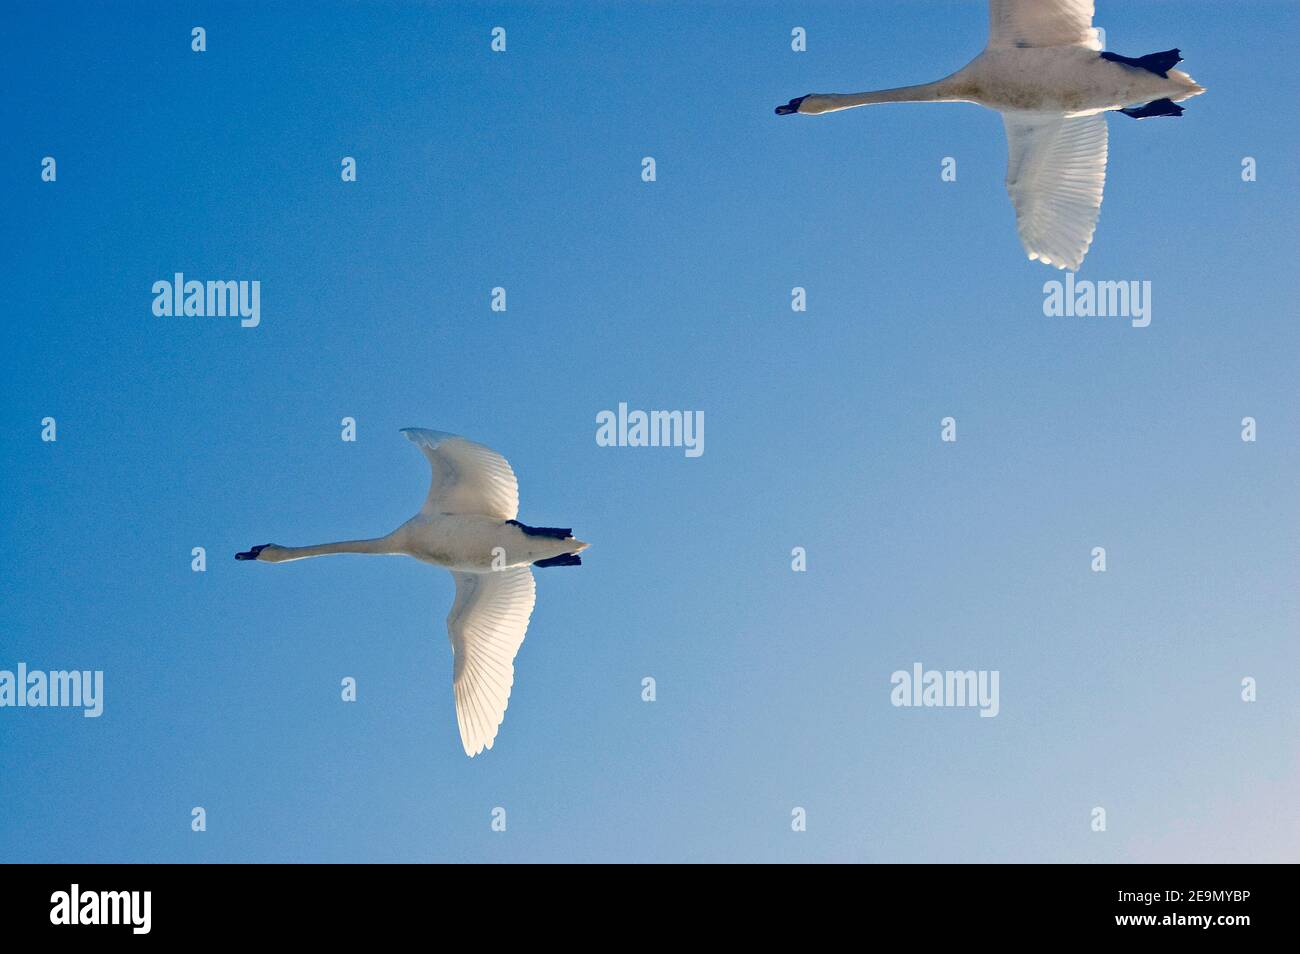 Ein Paar stumme Schwäne, lateinischer Name Cygnus olor, fliegen über einem blauen Himmel. Stockfoto